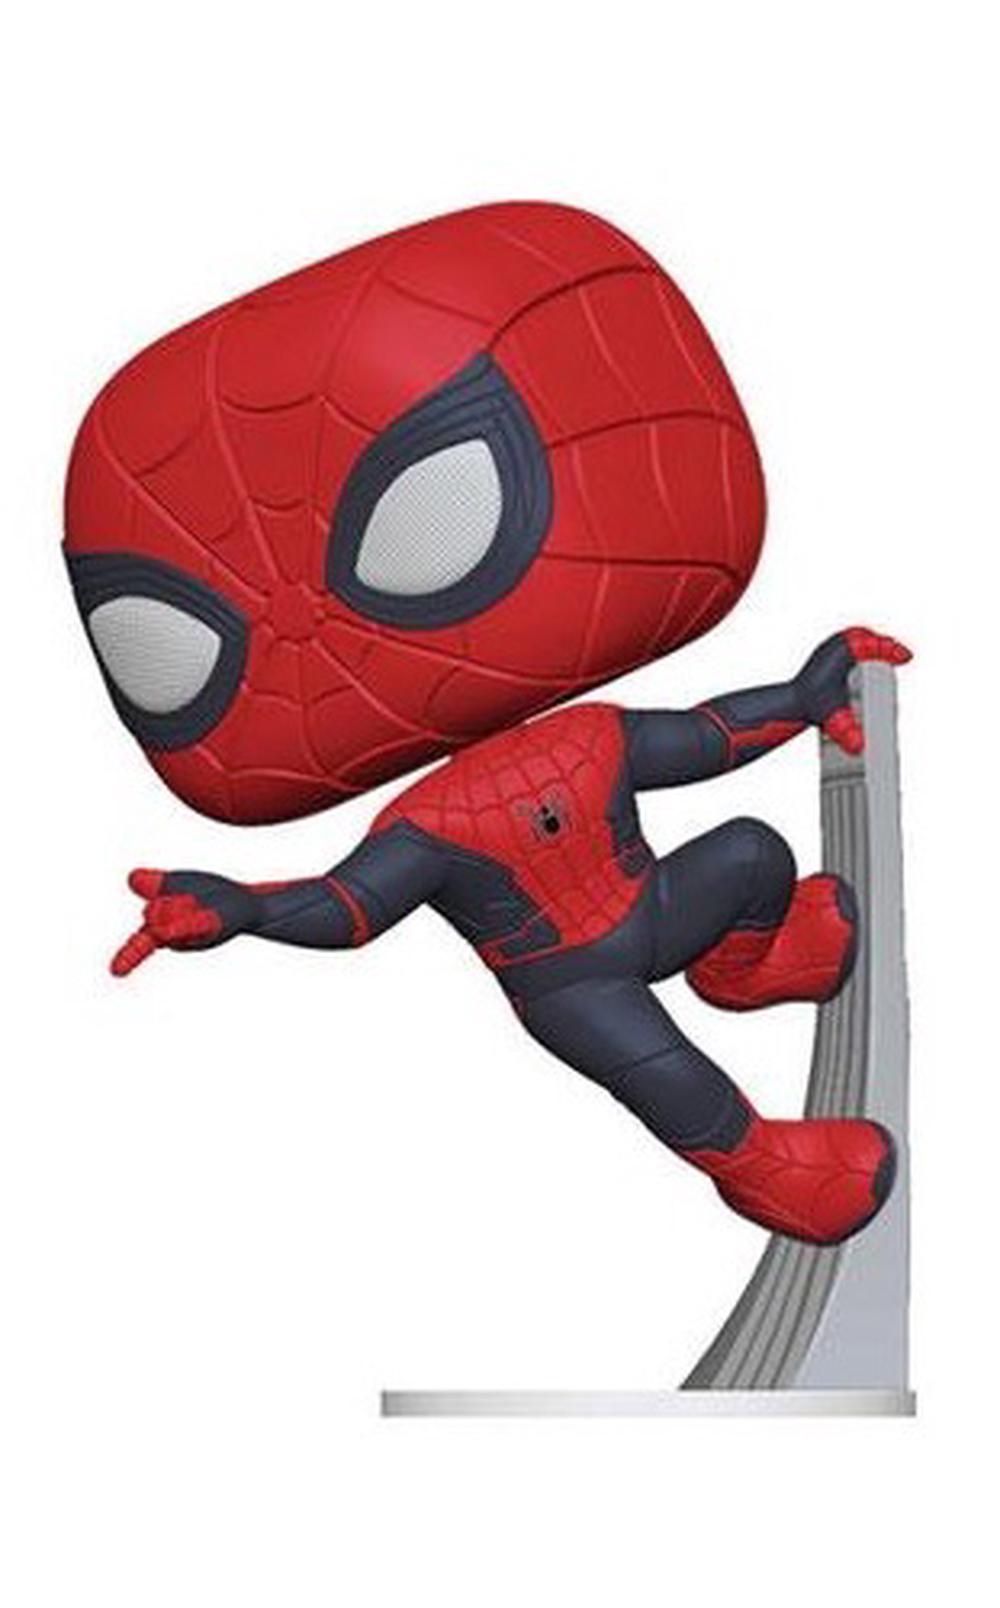 spider man vinyl figure